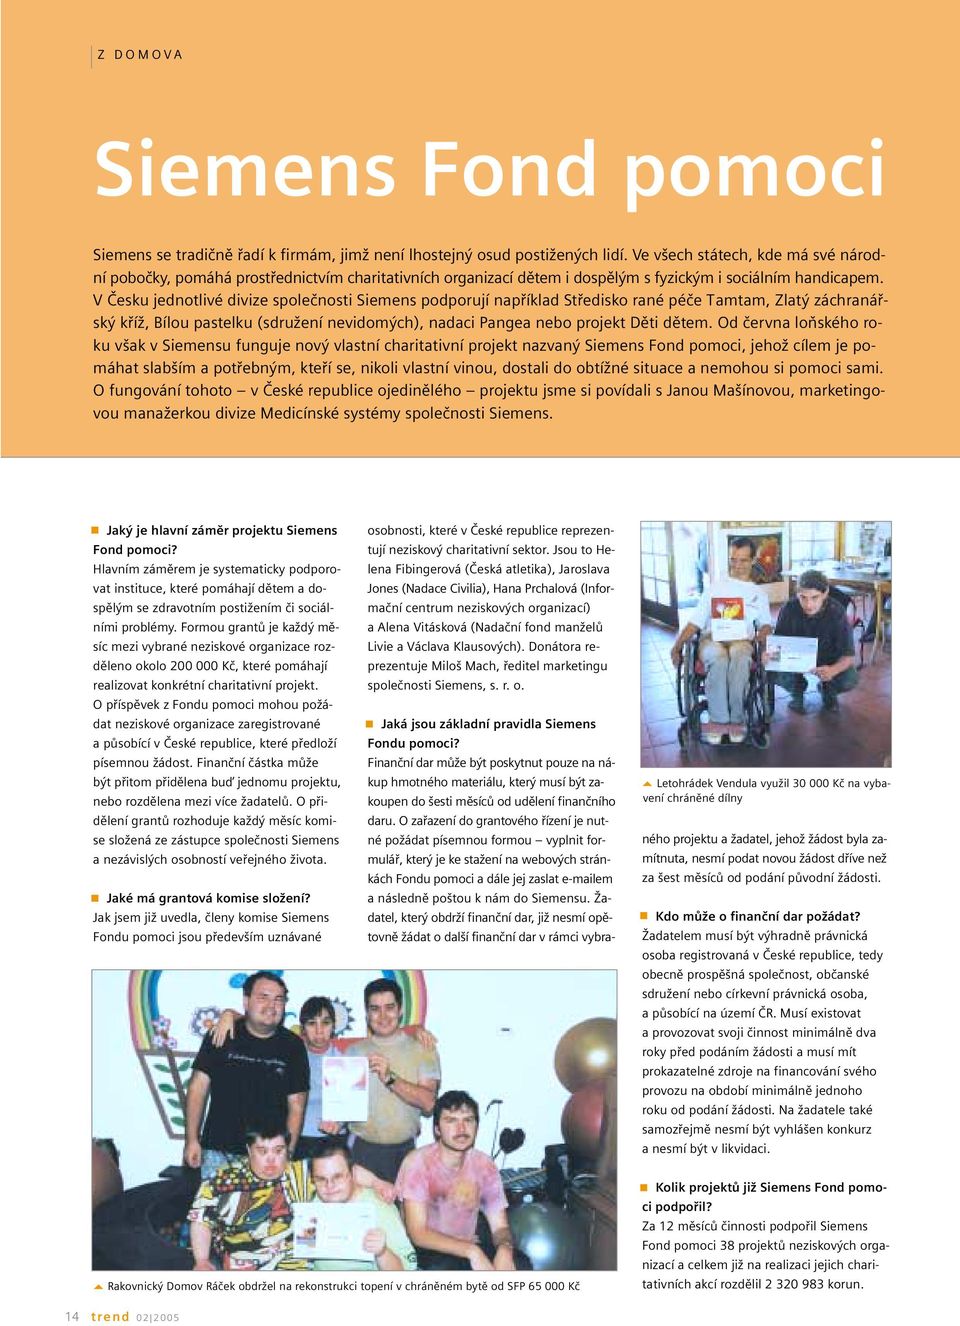 V Česku jednotlivé divize společnosti Siemens podporují například Středisko rané péče Tamtam, Zlatý záchranářský kříž, Bílou pastelku (sdružení nevidomých), nadaci Pangea nebo projekt Děti dětem.